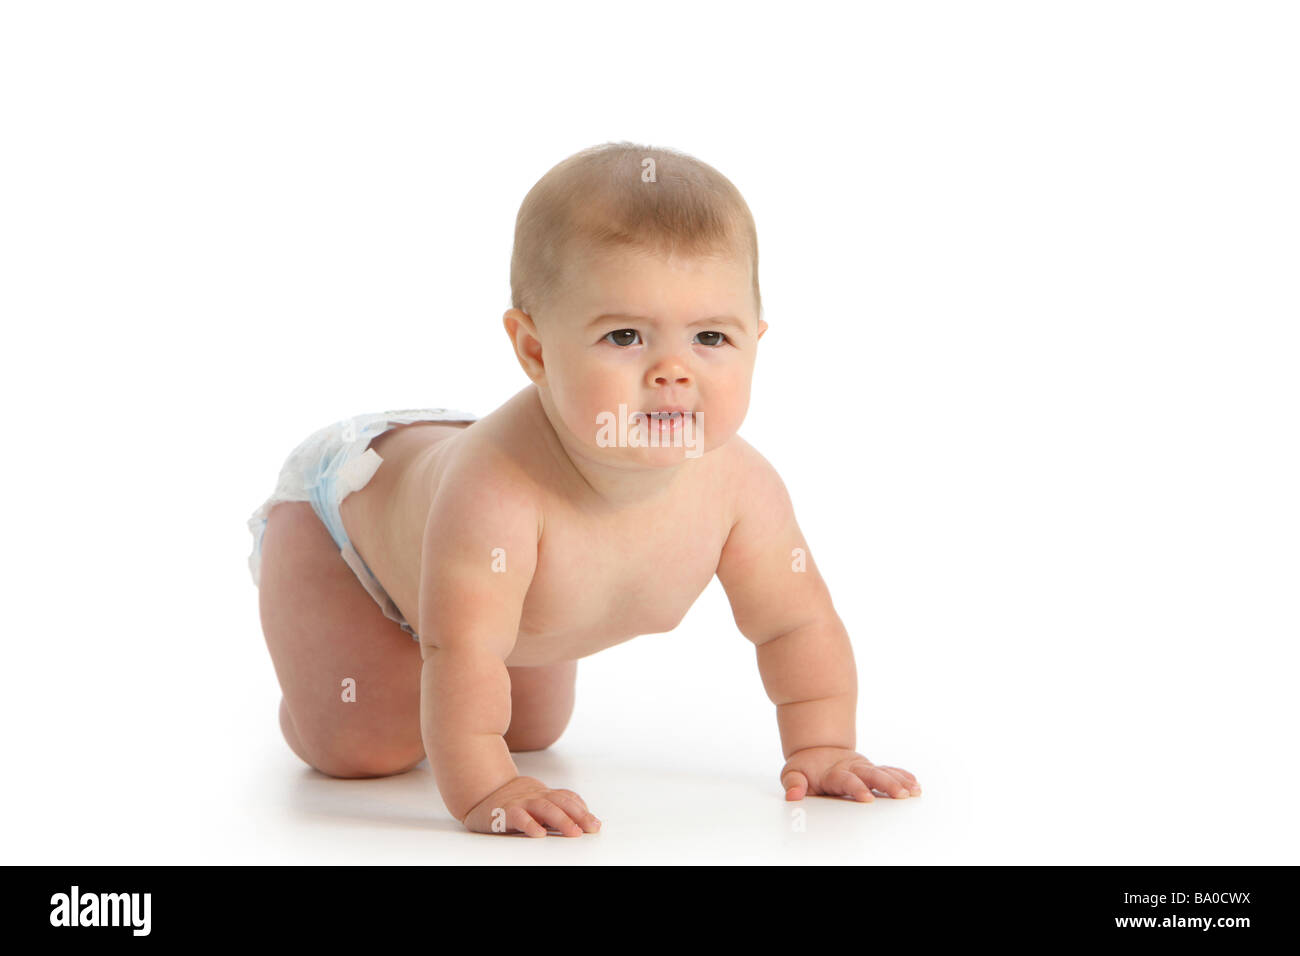 Baby crawling on white background Stock Photo